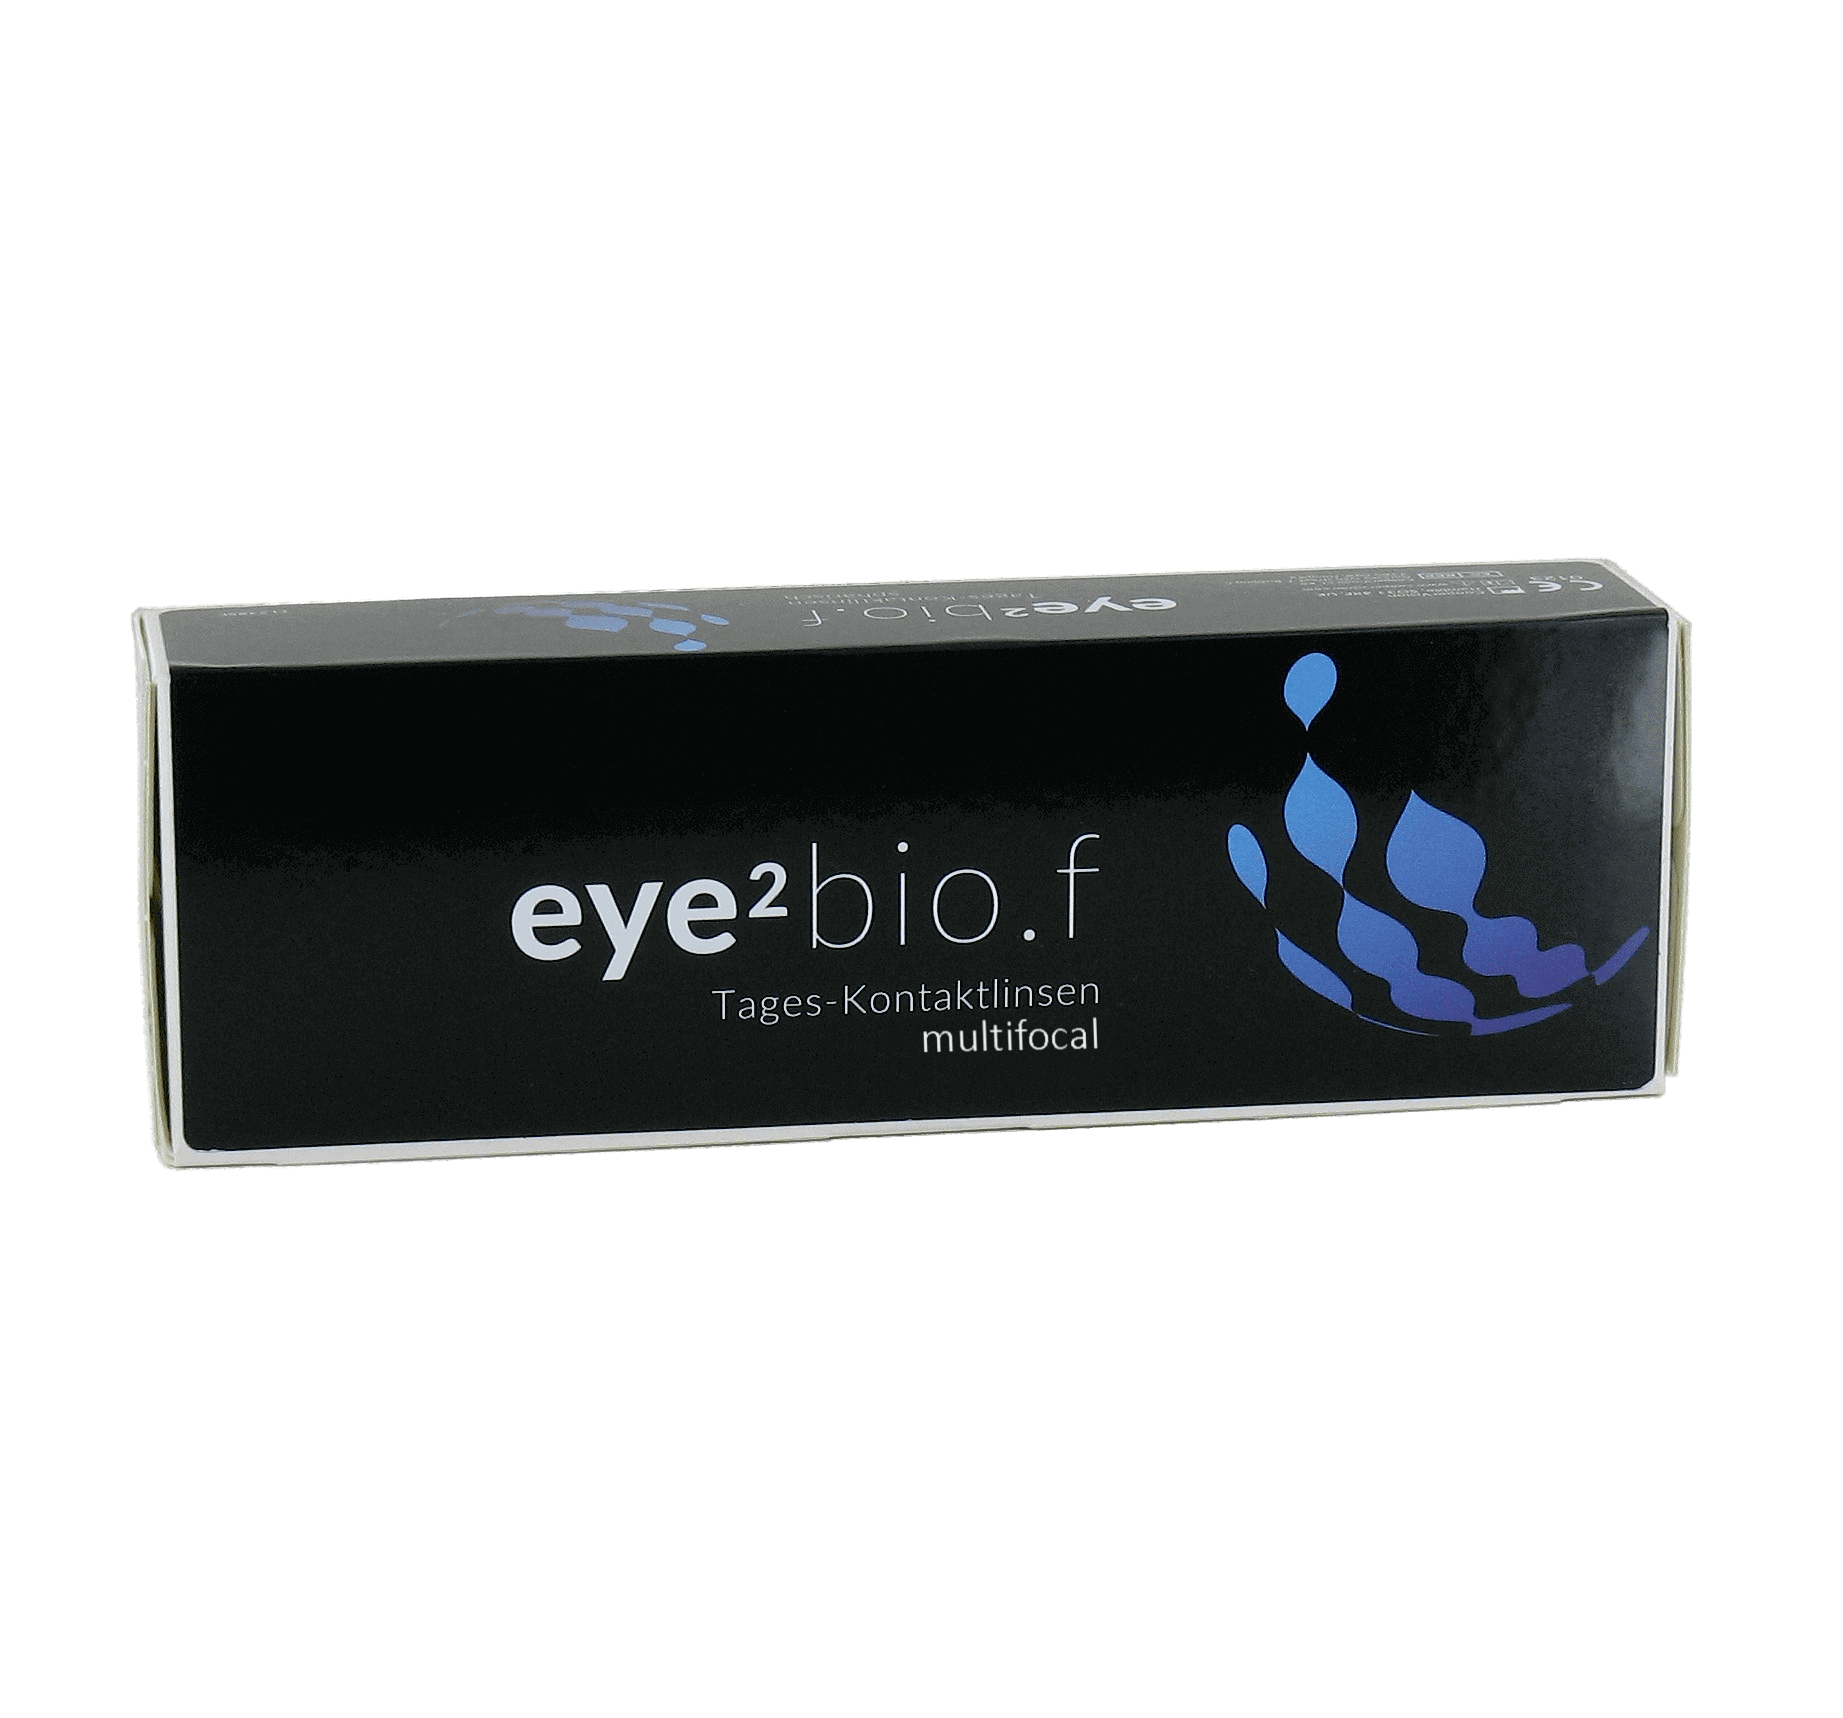 eye2 bio.f Tages-Kontaktlinsen multifocal (30er Box